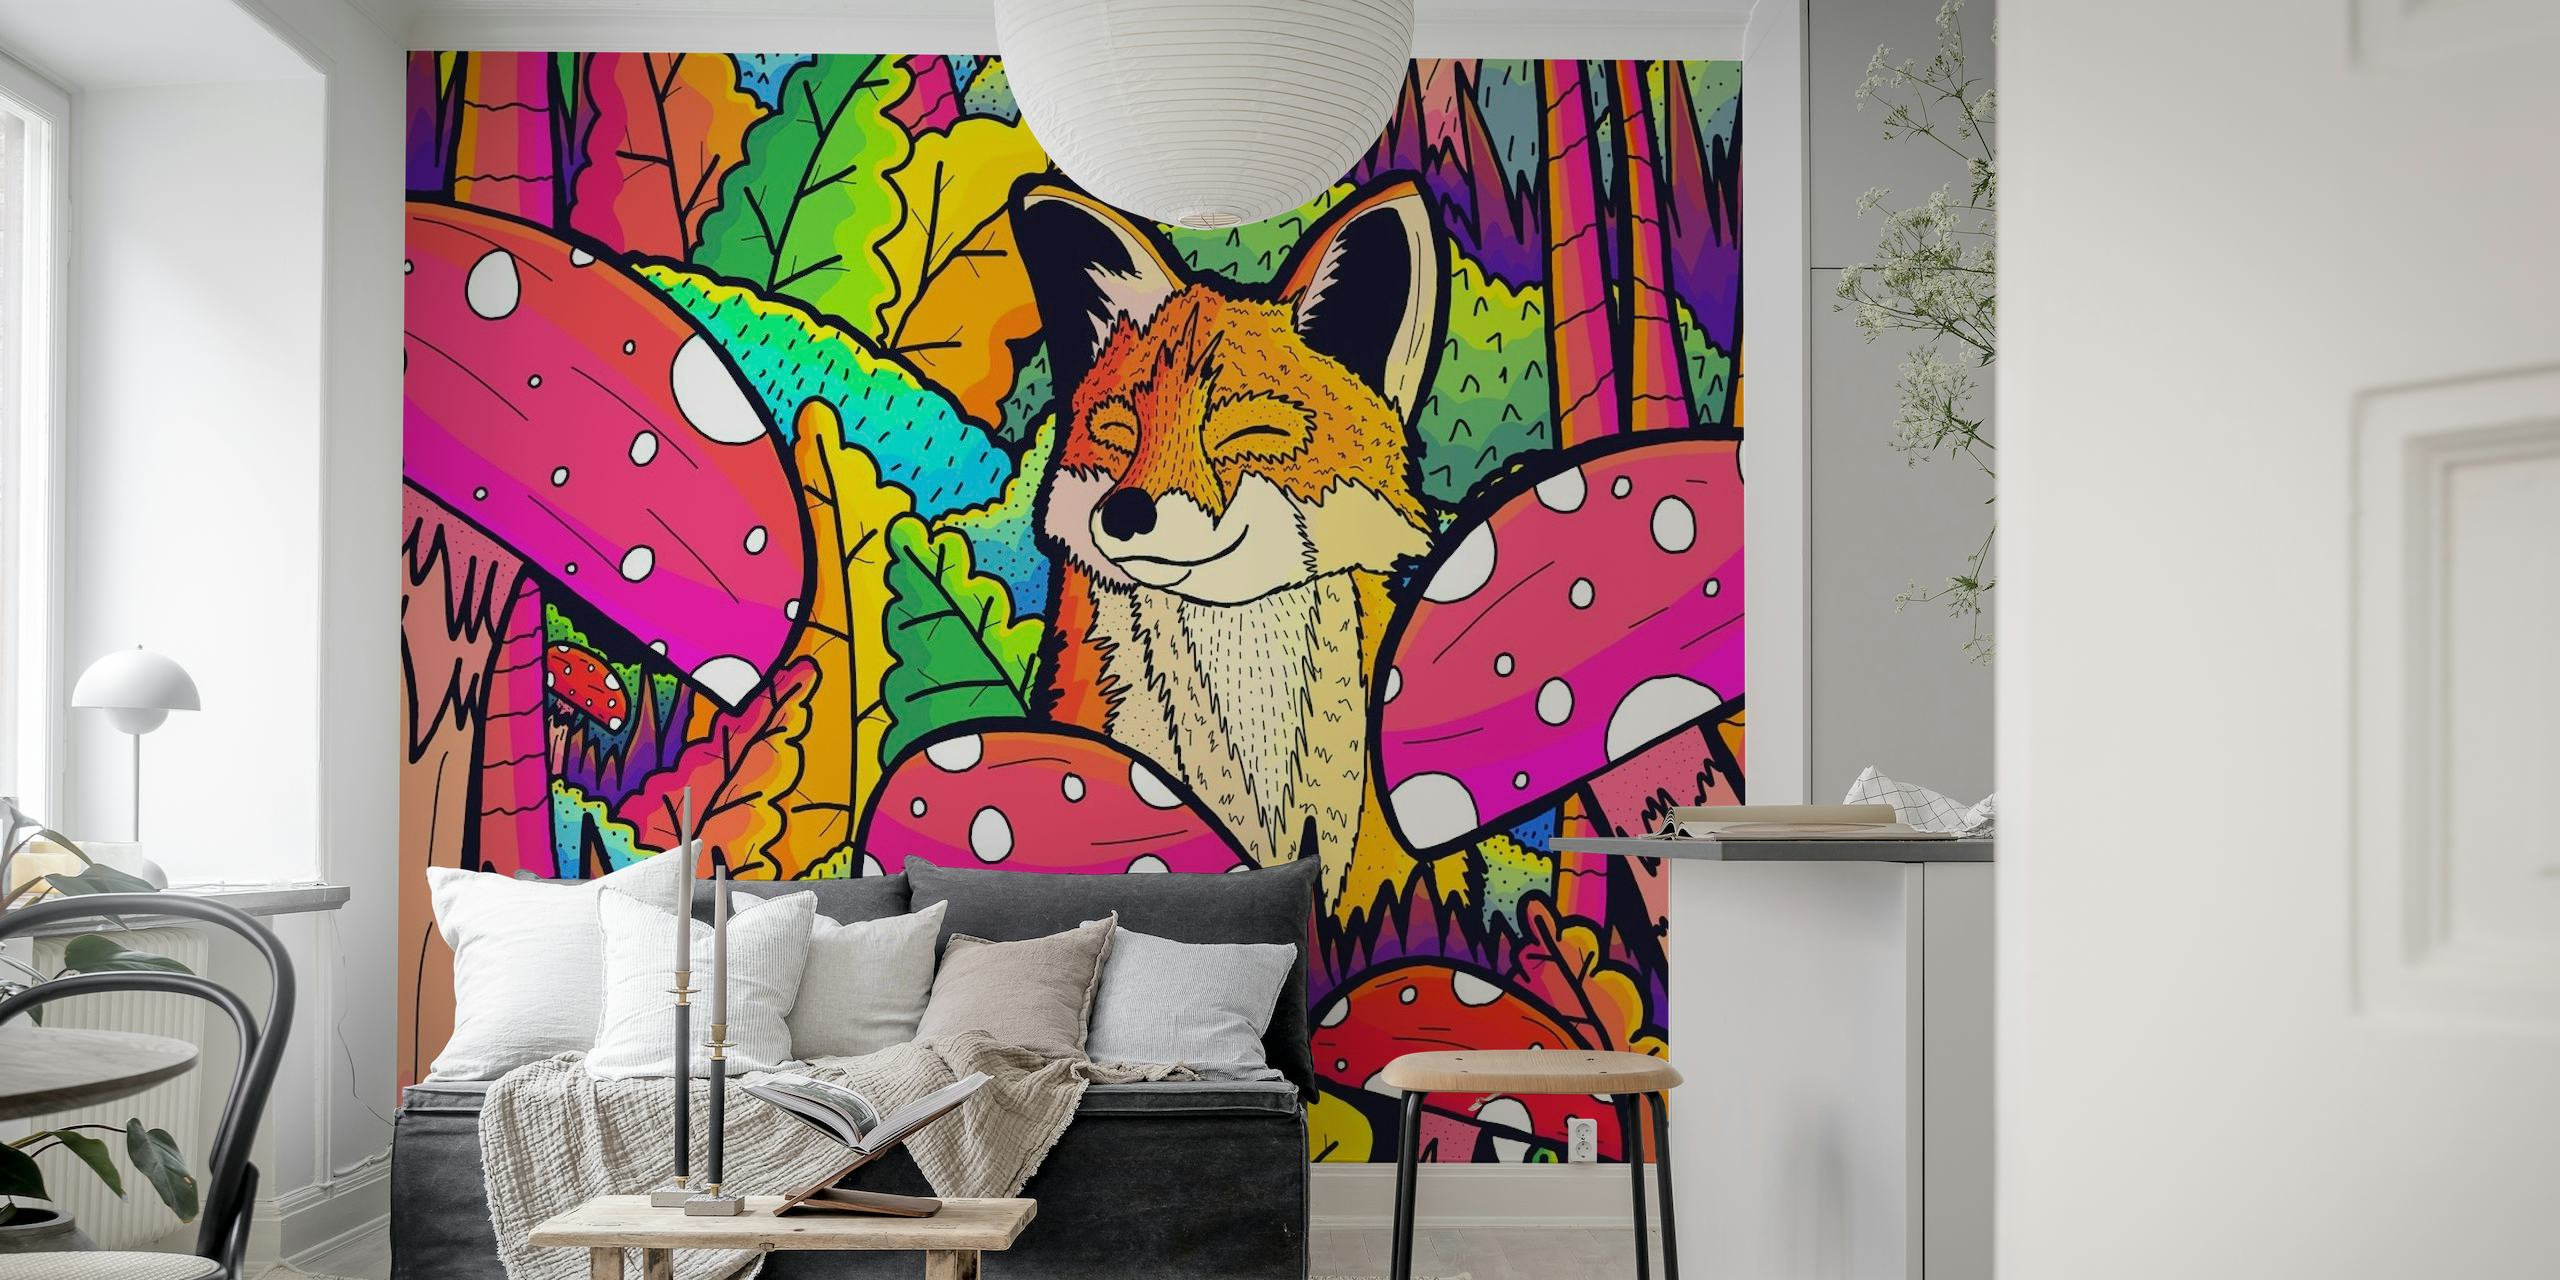 The happy little fox wallpaper